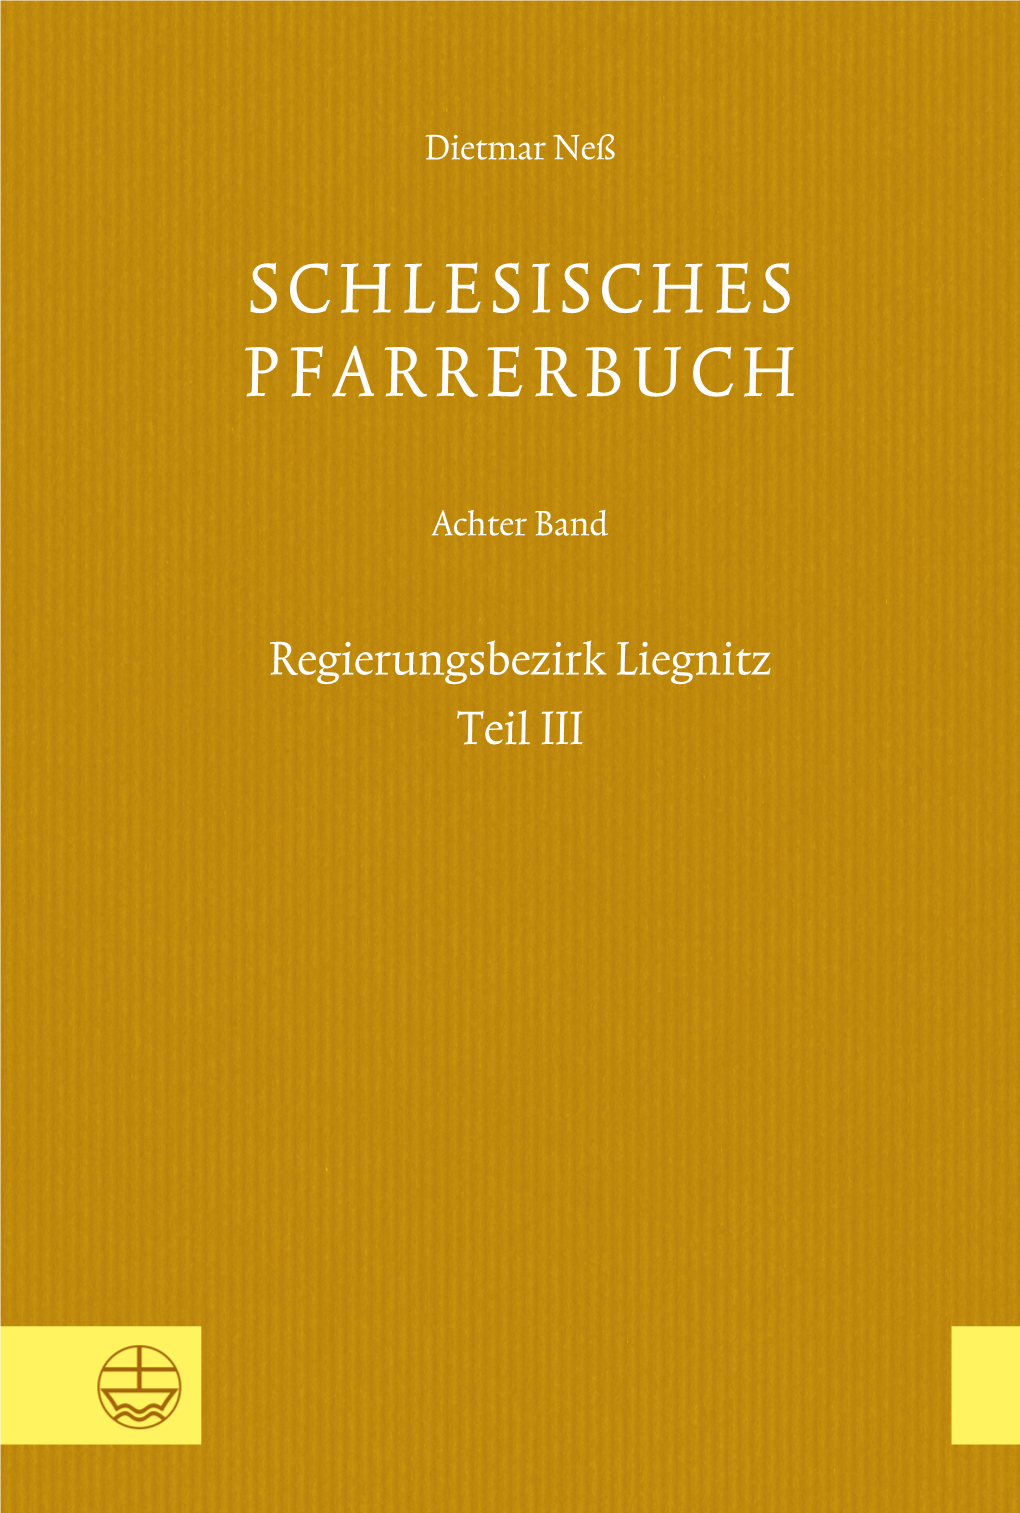 Schlesisches Pfarrerbuch. Achter Band: Regierungsbezirk Liegnitz